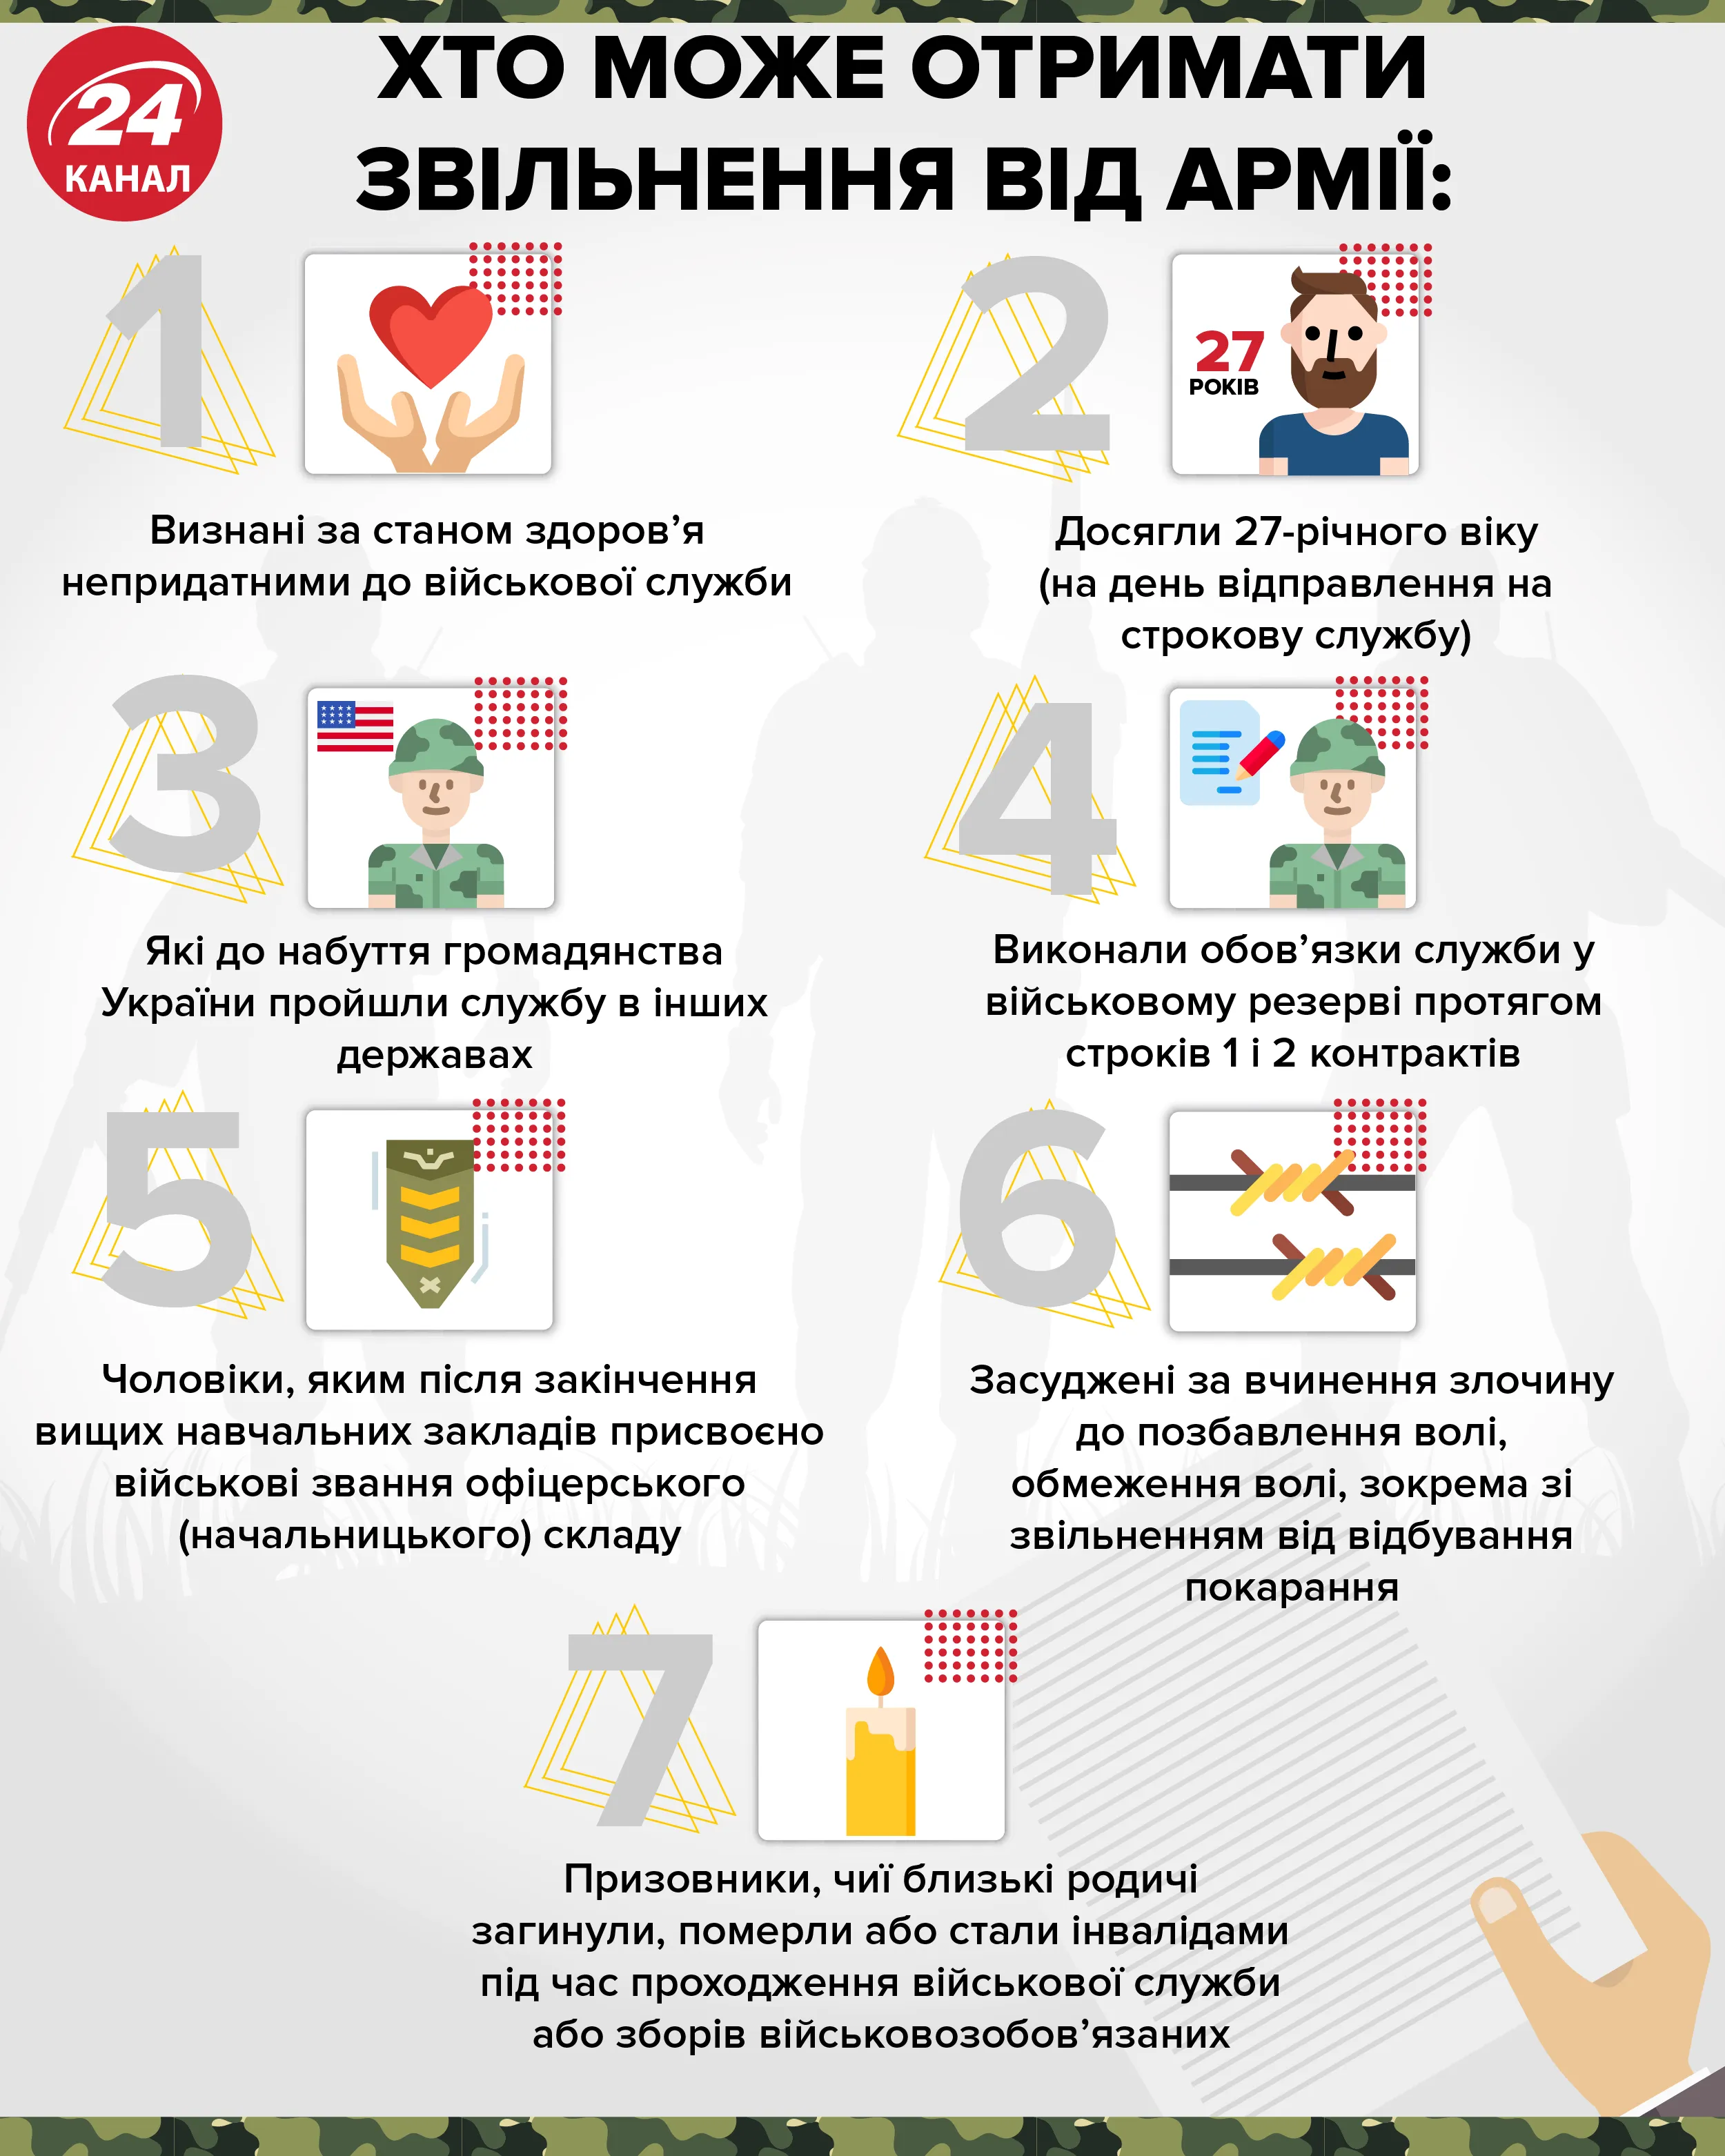 звільення від армії призов інфографіка 24 канал